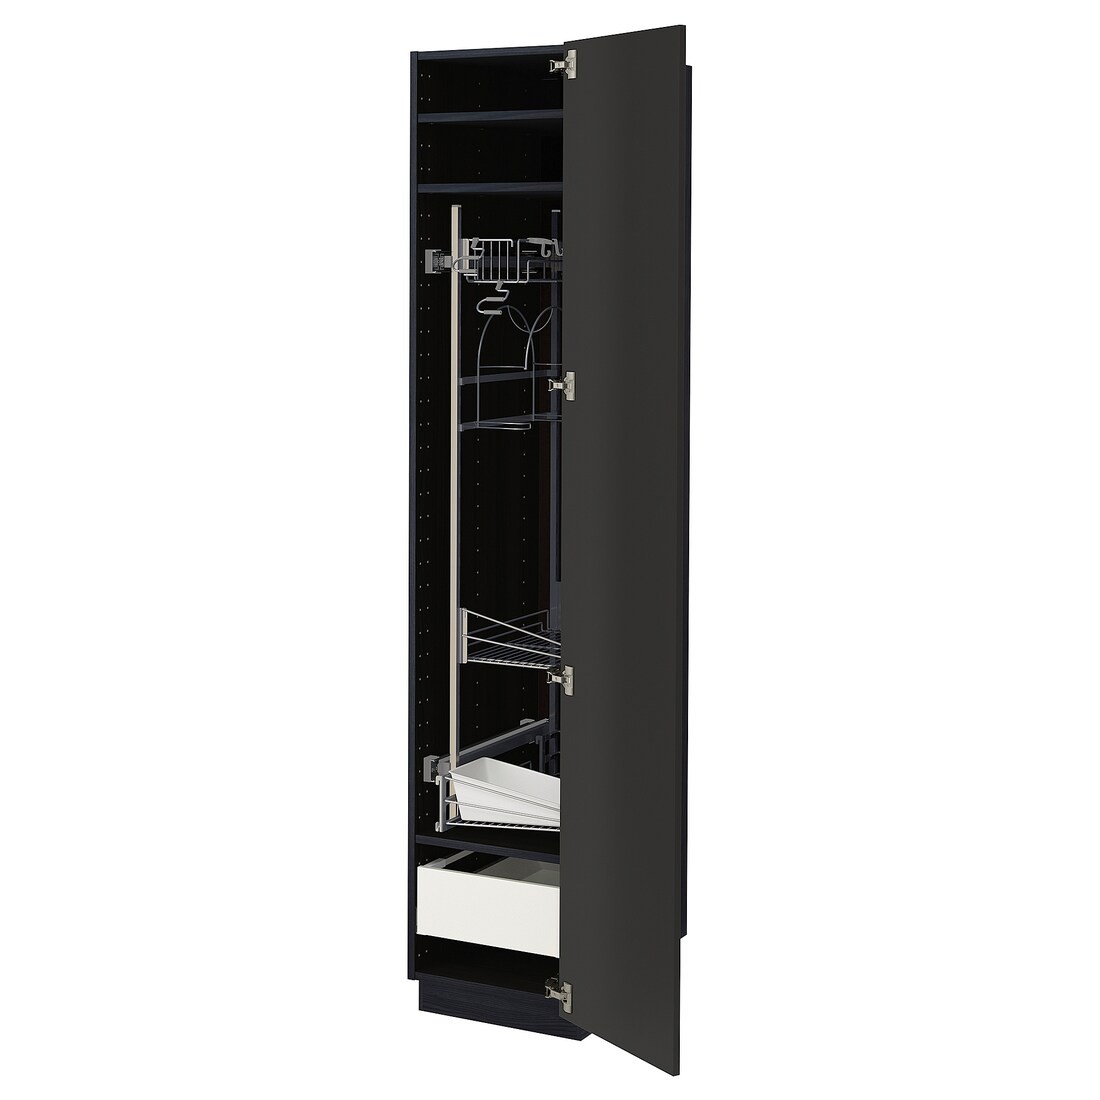 IKEA METOD МЕТОД / MAXIMERA МАКСИМЕРА Высокий шкаф с отделением для аксессуаров для уборки, черный / Nickebo матовый антрацит, 40x60x200 см 89499152 894.991.52